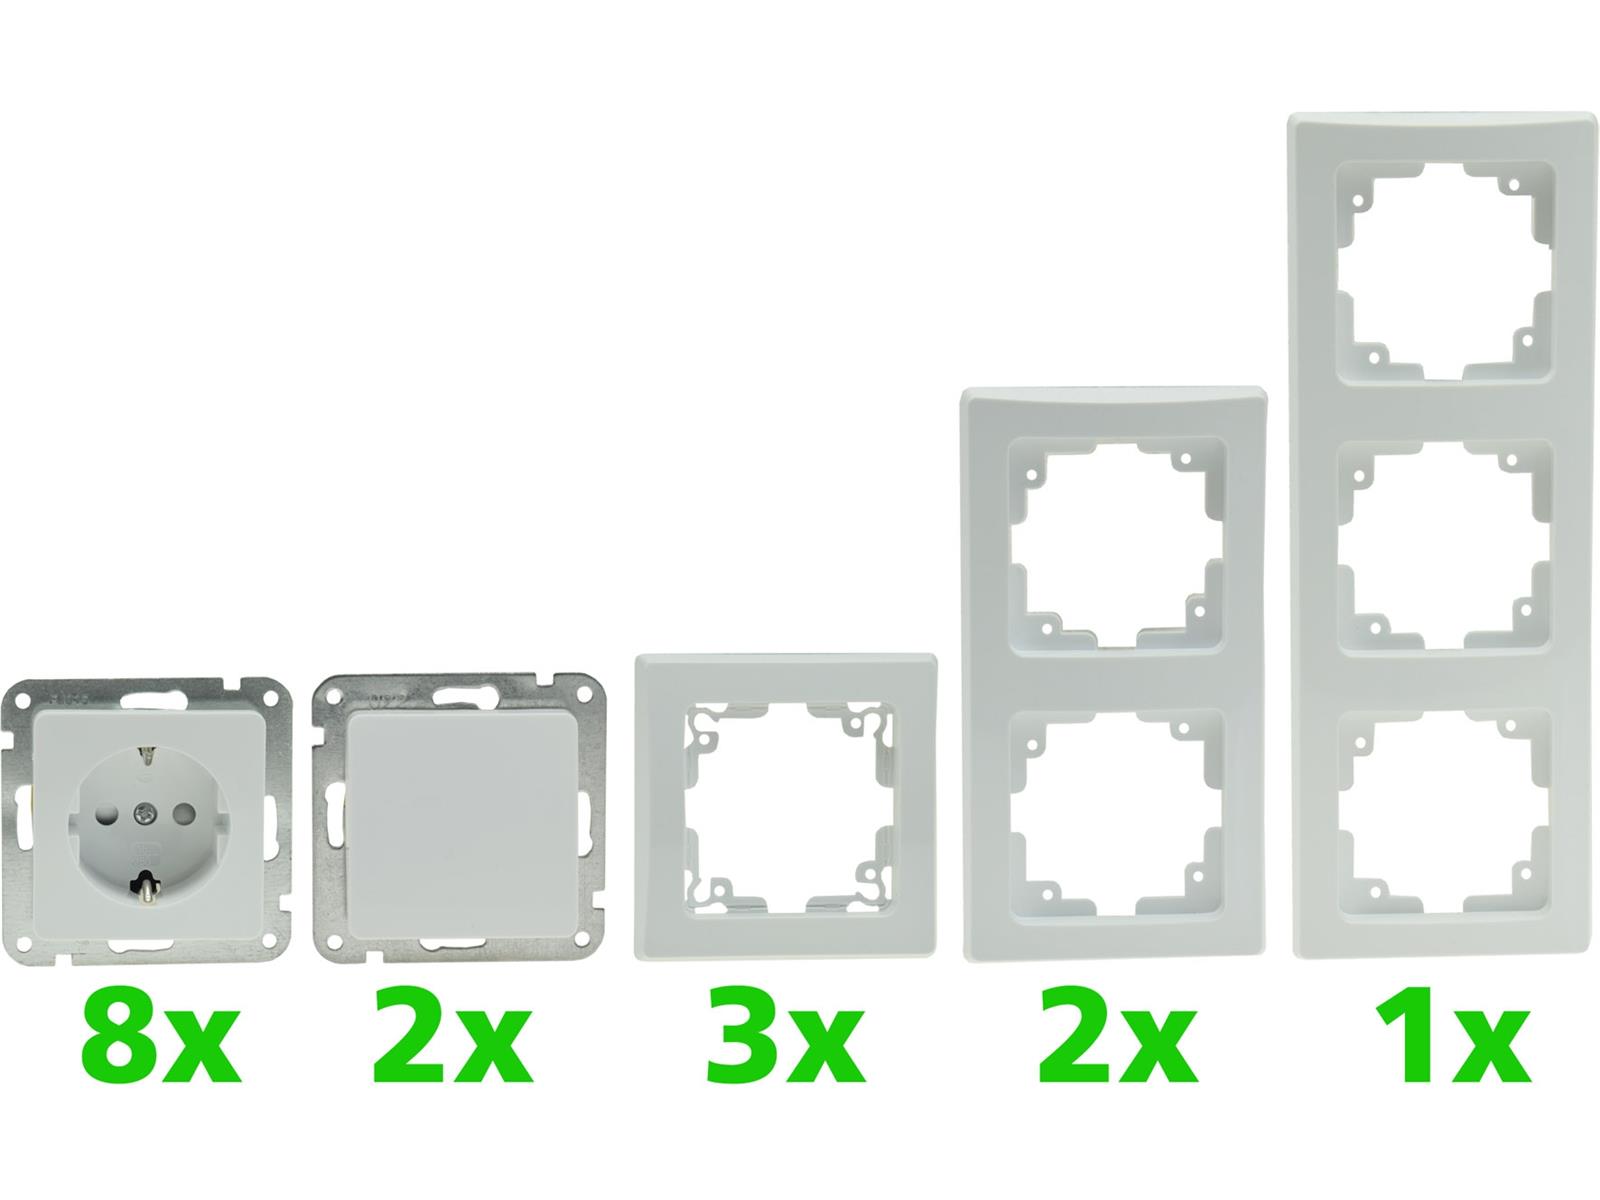 DELPHI Starter-Kit, 16-teilig "PRO",weiß8x Steckdose, 2x Schalter, Klemmanschluß